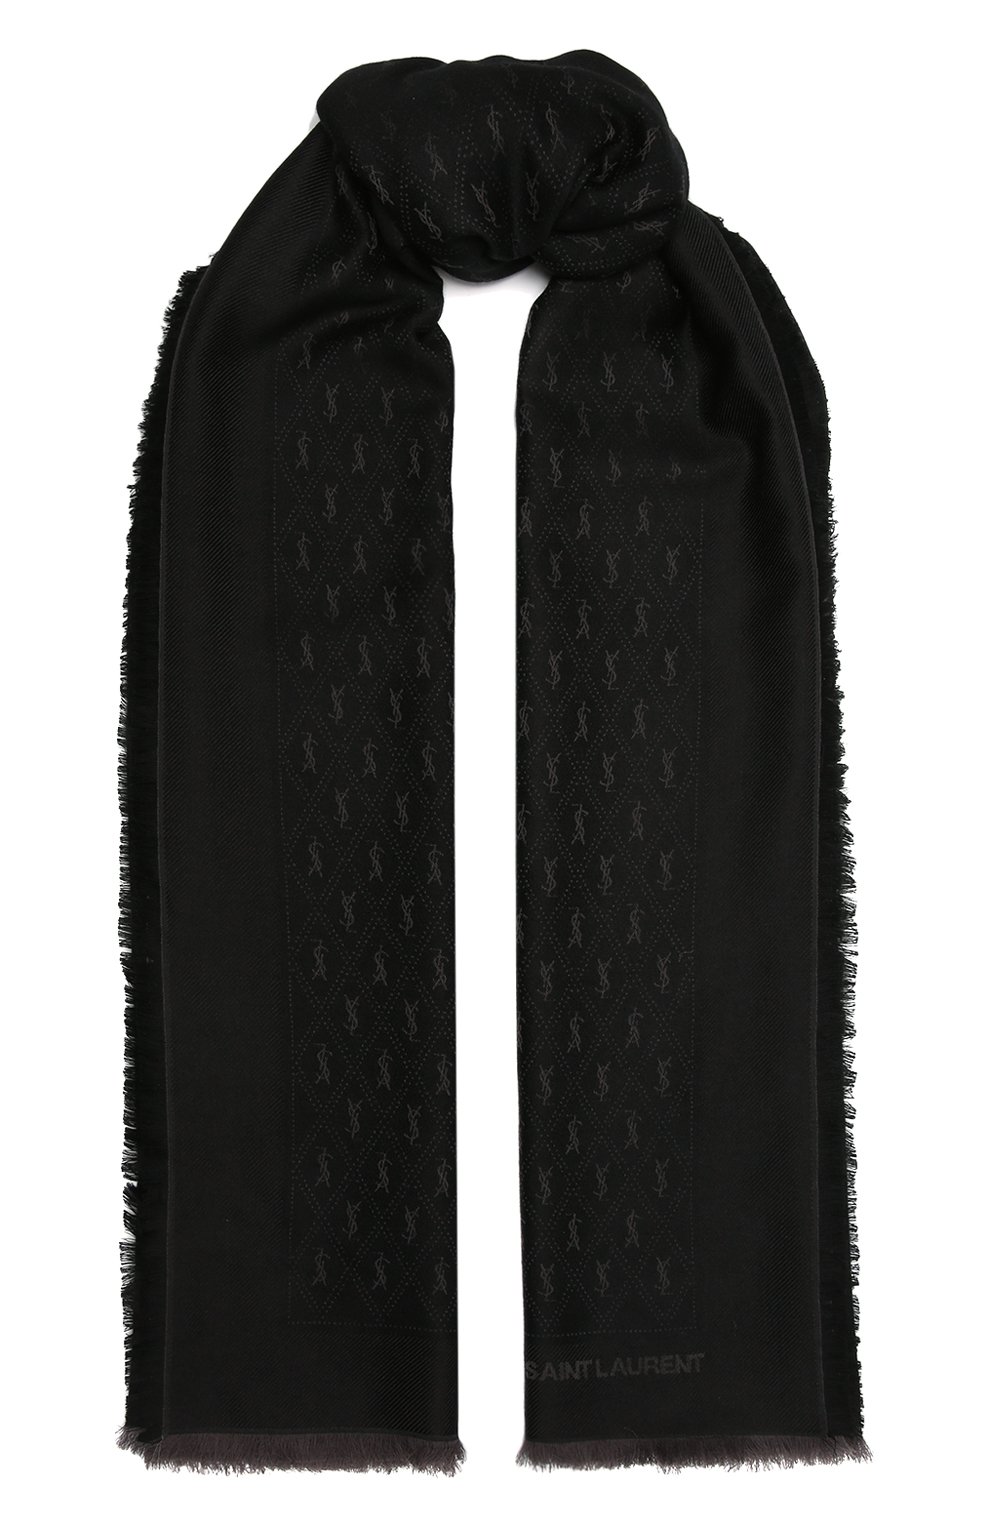 Женский шарф SAINT LAURENT черного цвета, арт. 689147/3YI74 | Фото 1 (Материал: Текстиль, Шерсть, Хлопок)